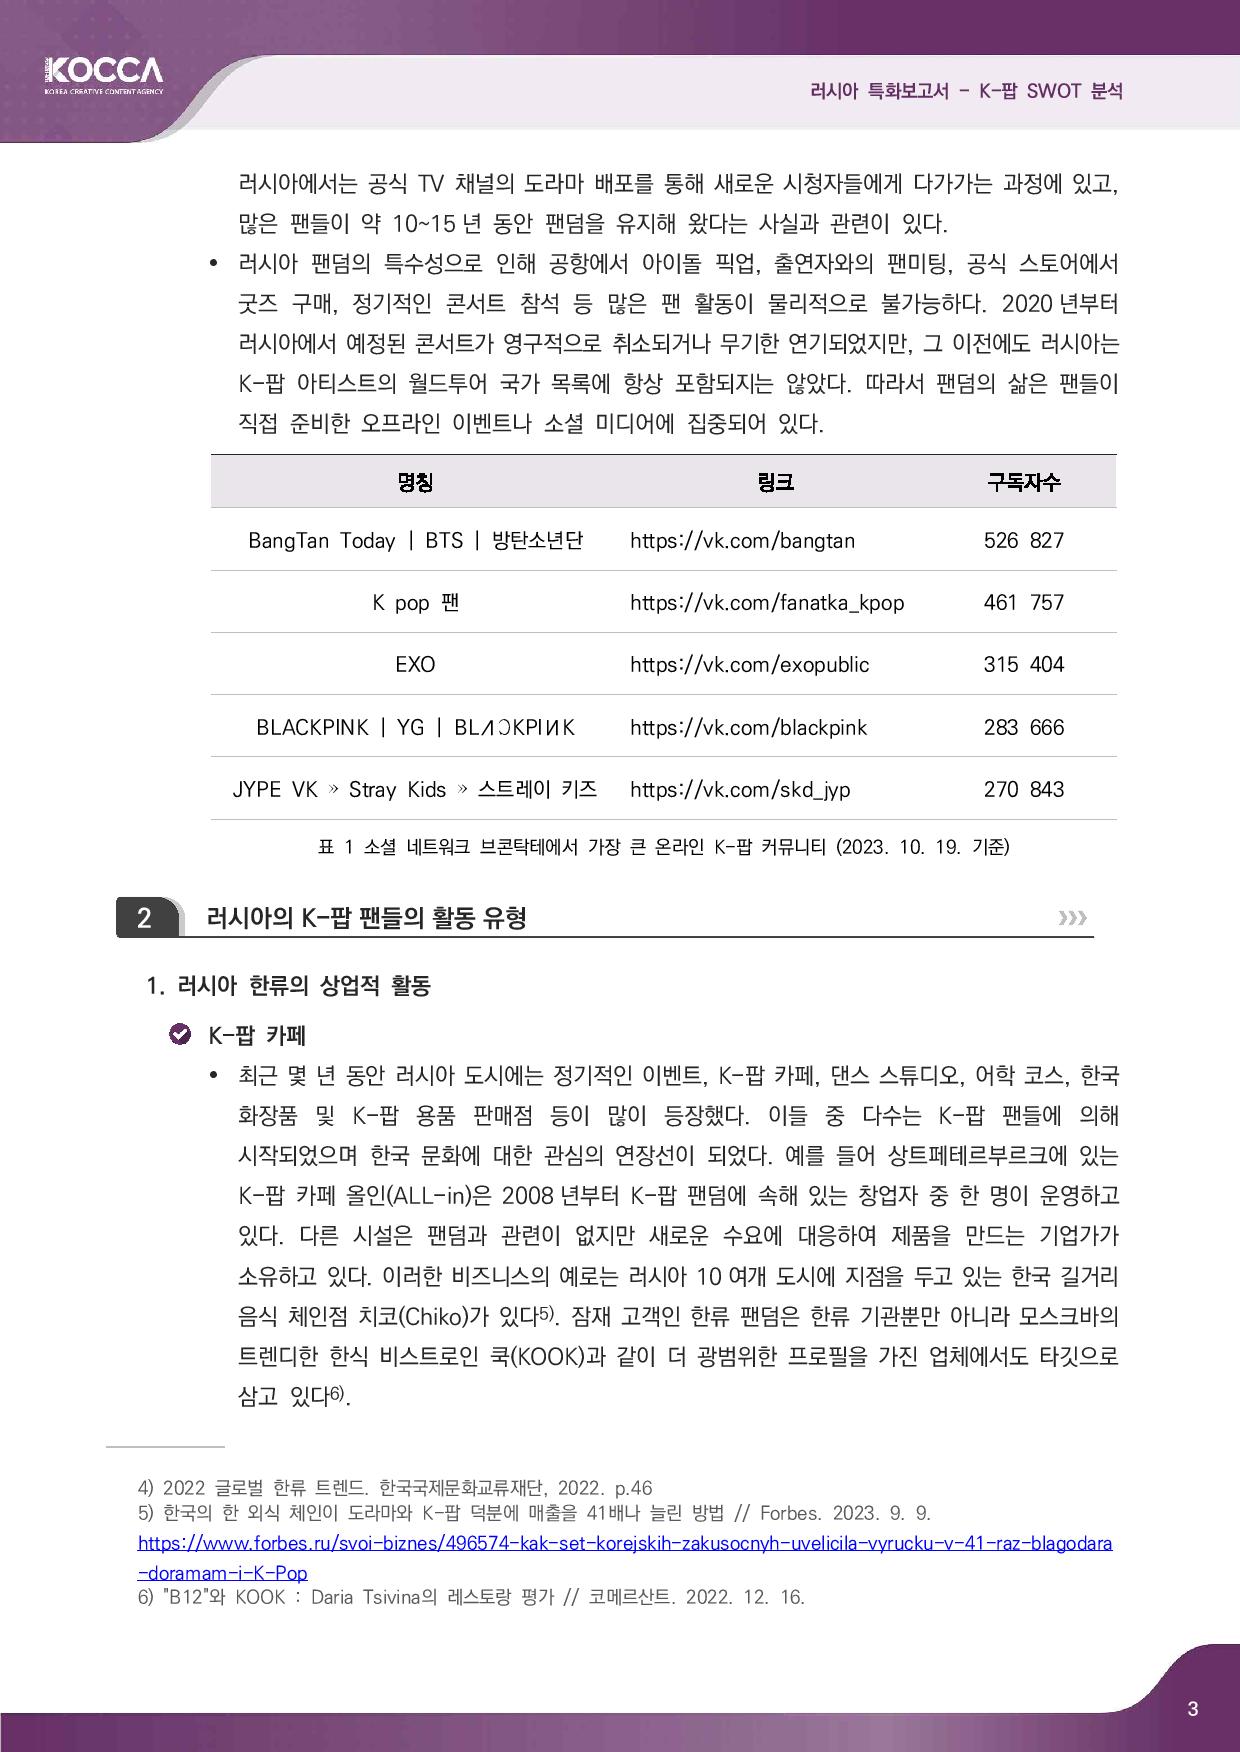 2. 러시아 특화보고서_K-pop SWOT 분석 (3)-page-005.jpg